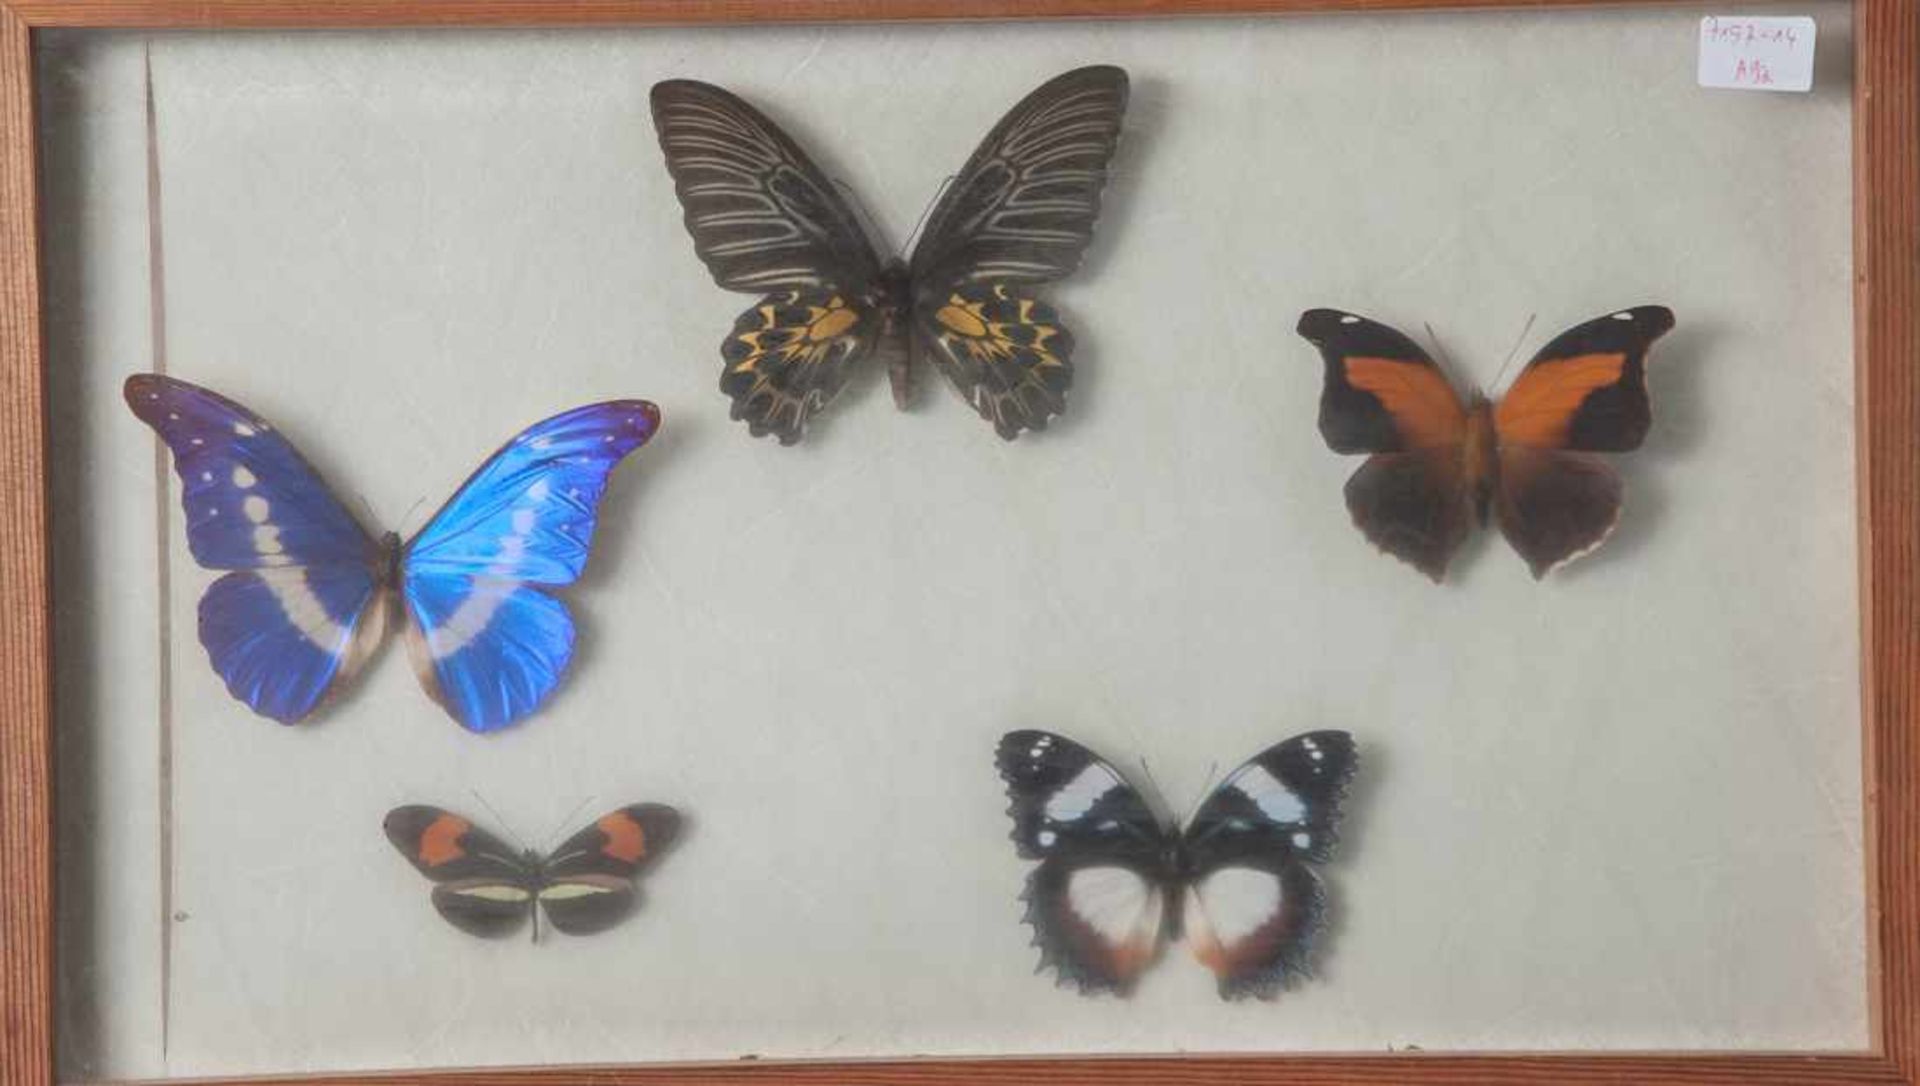 Wandvitrine mit exotischen Schmetterlingen, Ornithoptera kaguya - Indo-Australien, Morphohelena -